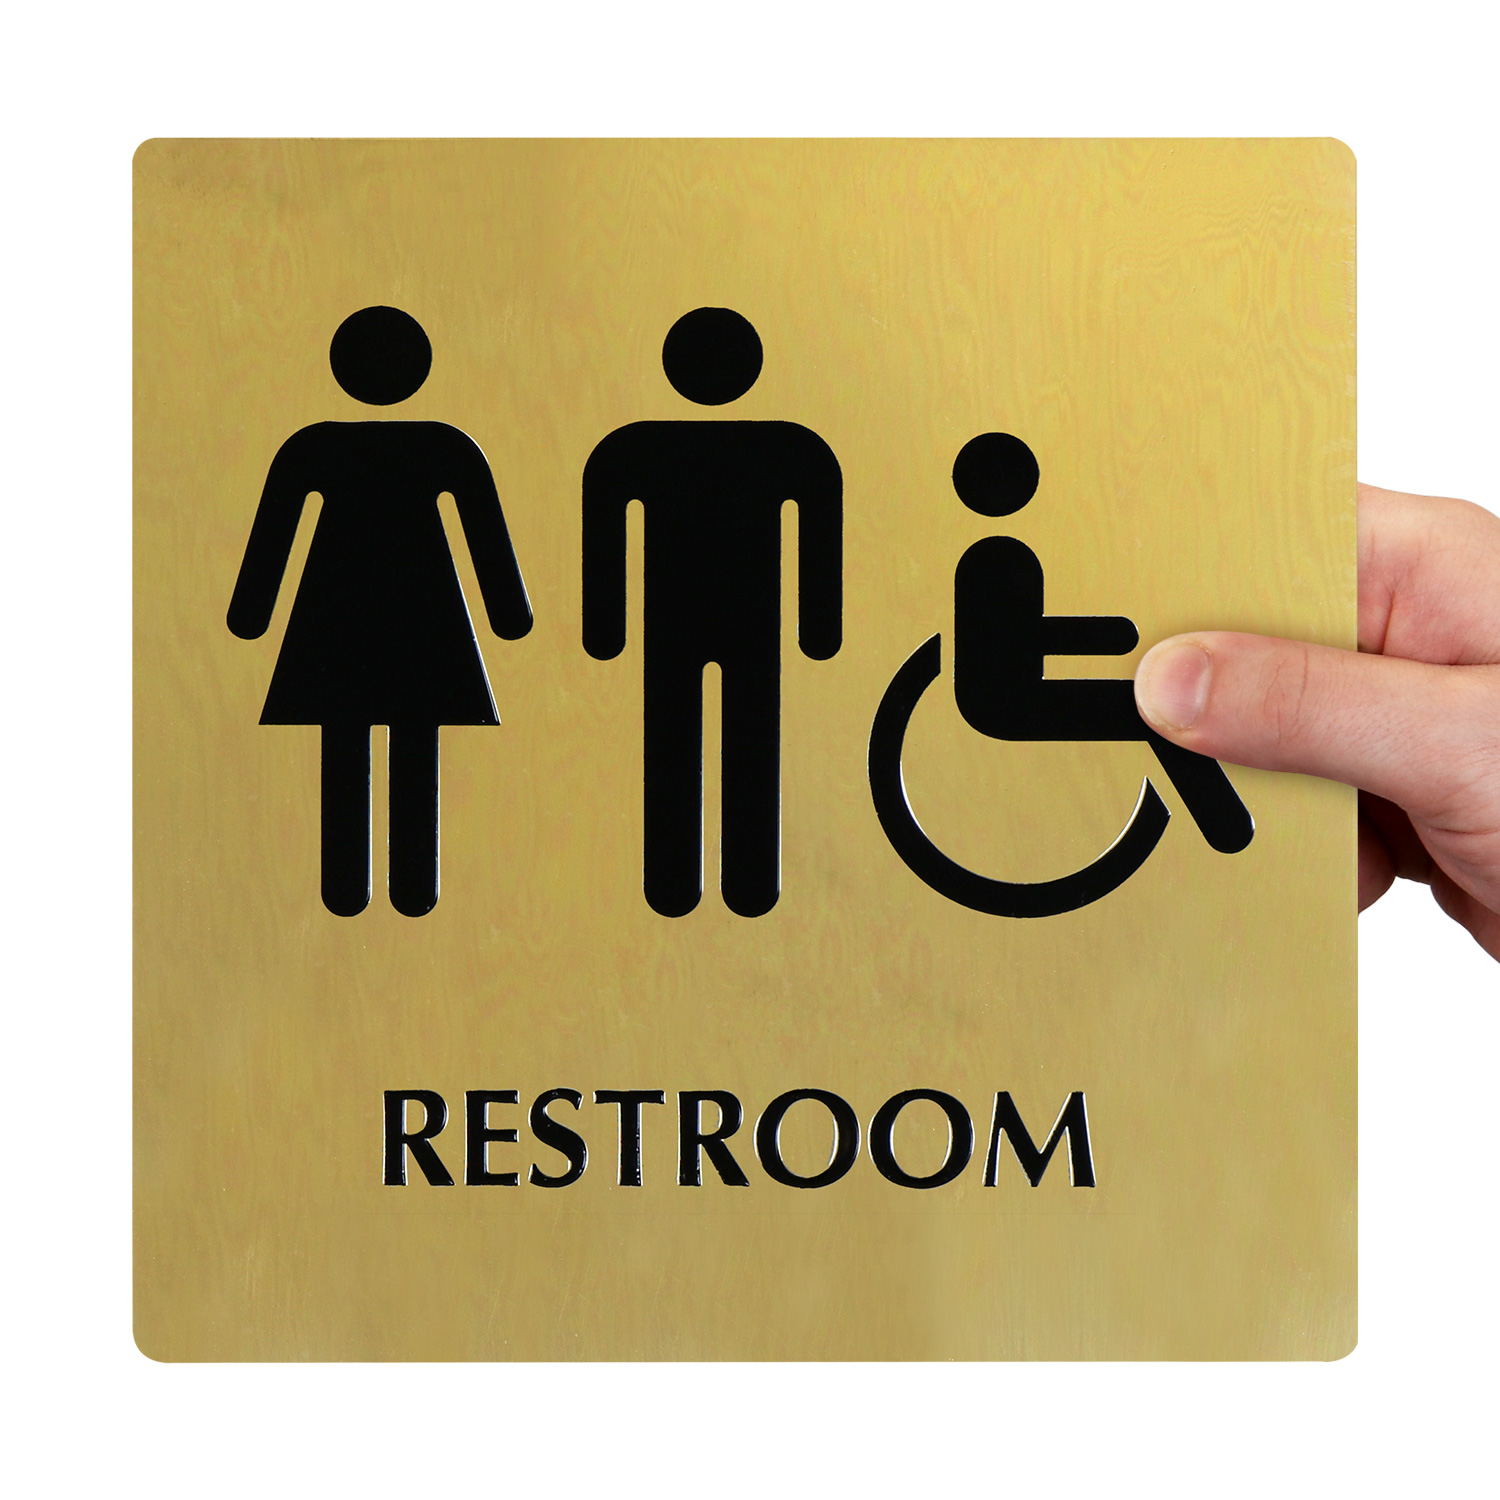 8"x12" METAL SIGN Business #1 Bathroom Restroom Men Women Unisex Accessible 